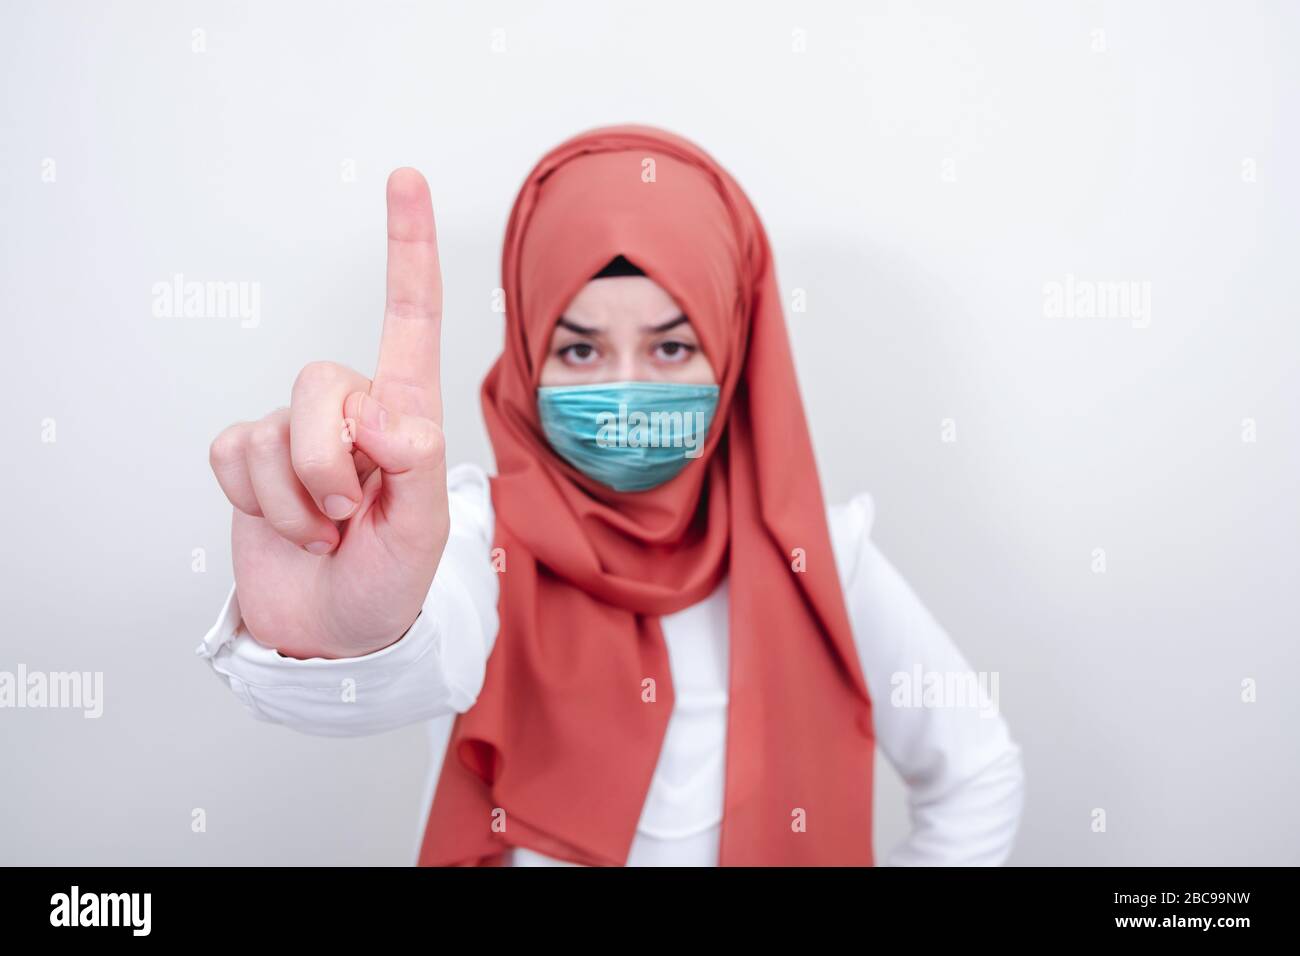 Ragazza musulmana che indossa una maschera chirurgica per la protezione. Donna hijab prendere una maschera per coronavirus o COVID-19 epidemia o pandemica Foto Stock